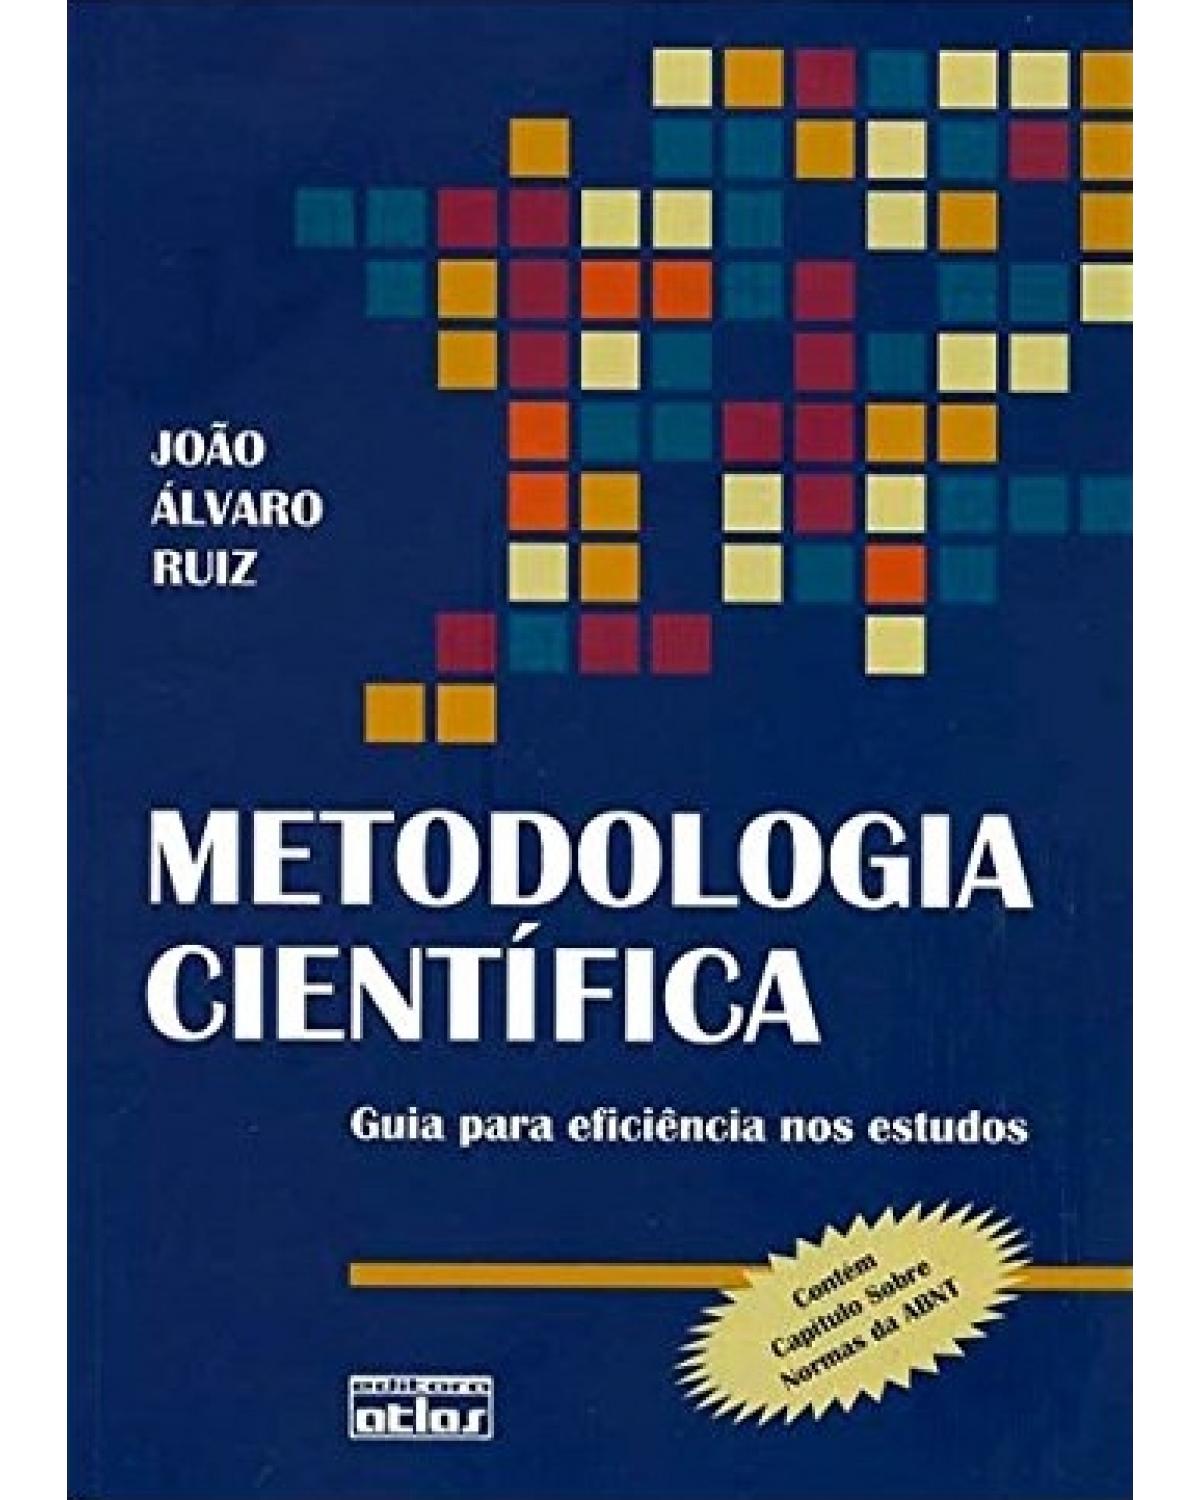 Metodologia científica - Guia para eficiência nos estudos - 6ª Edição | 2006